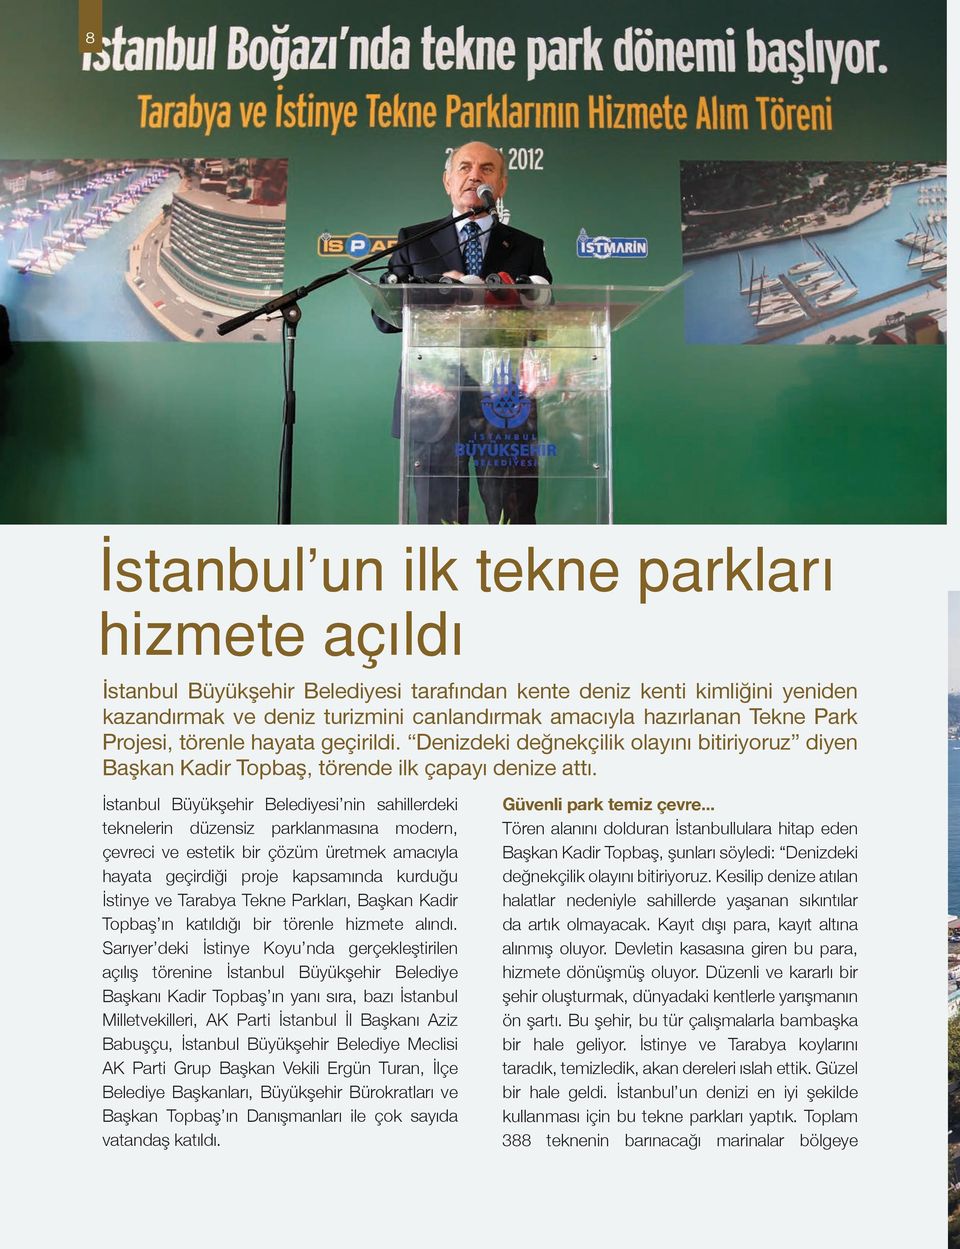 İstanbul Büyükşehir Belediyesi nin sahillerdeki teknelerin düzensiz parklanmasına modern, çevreci ve estetik bir çözüm üretmek amacıyla hayata geçirdiği proje kapsamında kurduğu İstinye ve Tarabya